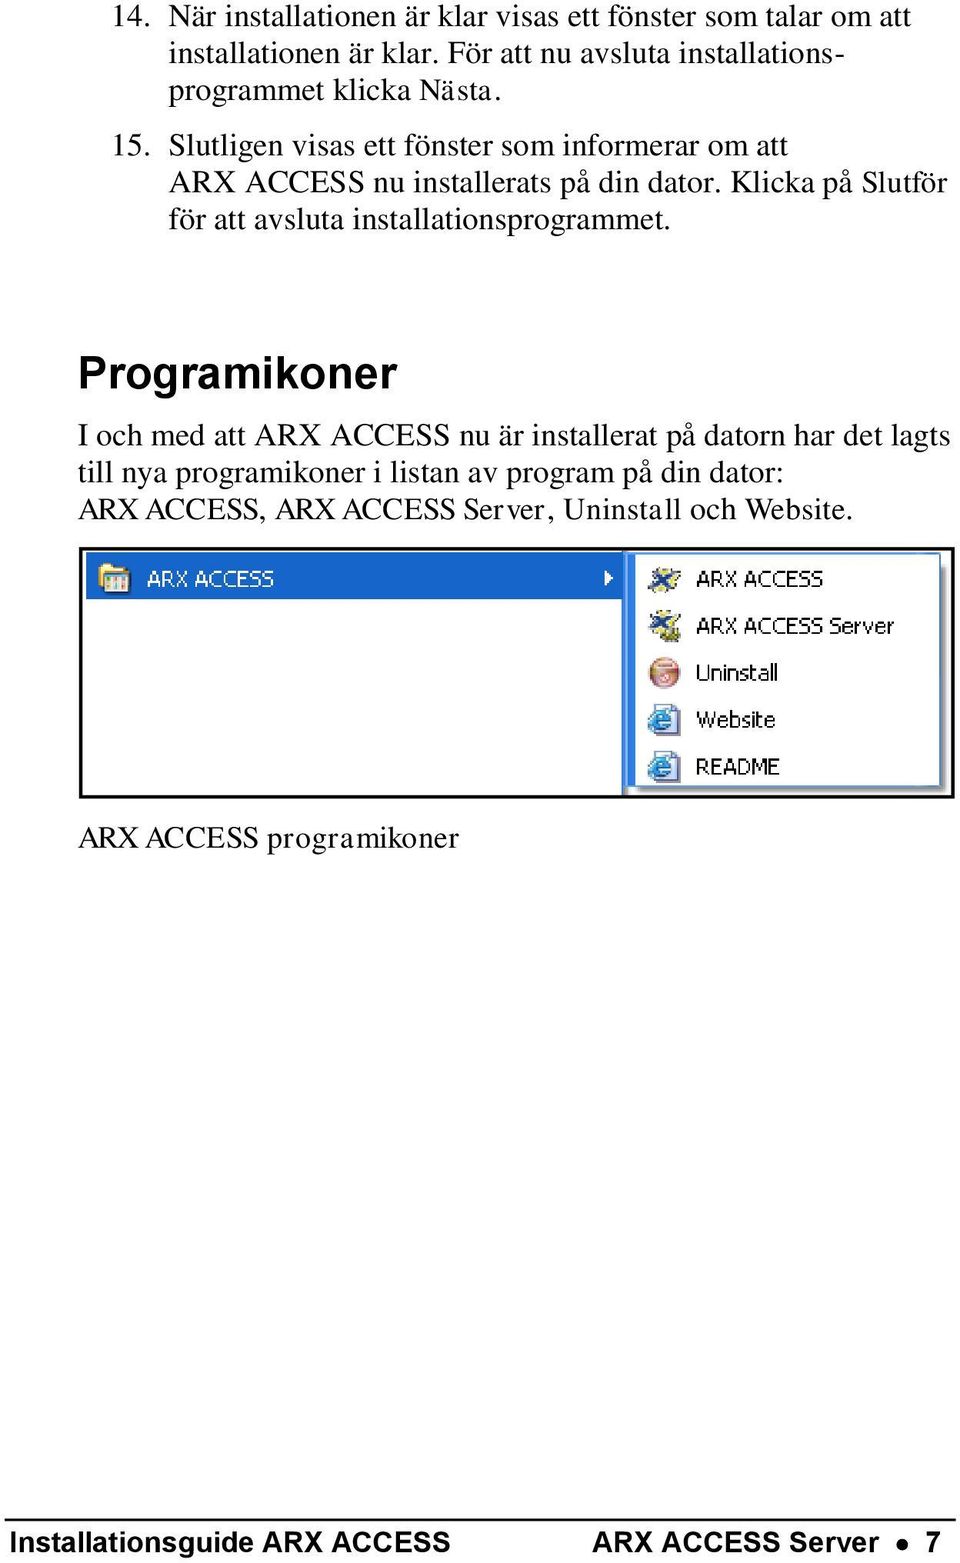 Slutligen visas ett fönster som informerar om att ARX ACCESS nu installerats på din dator.